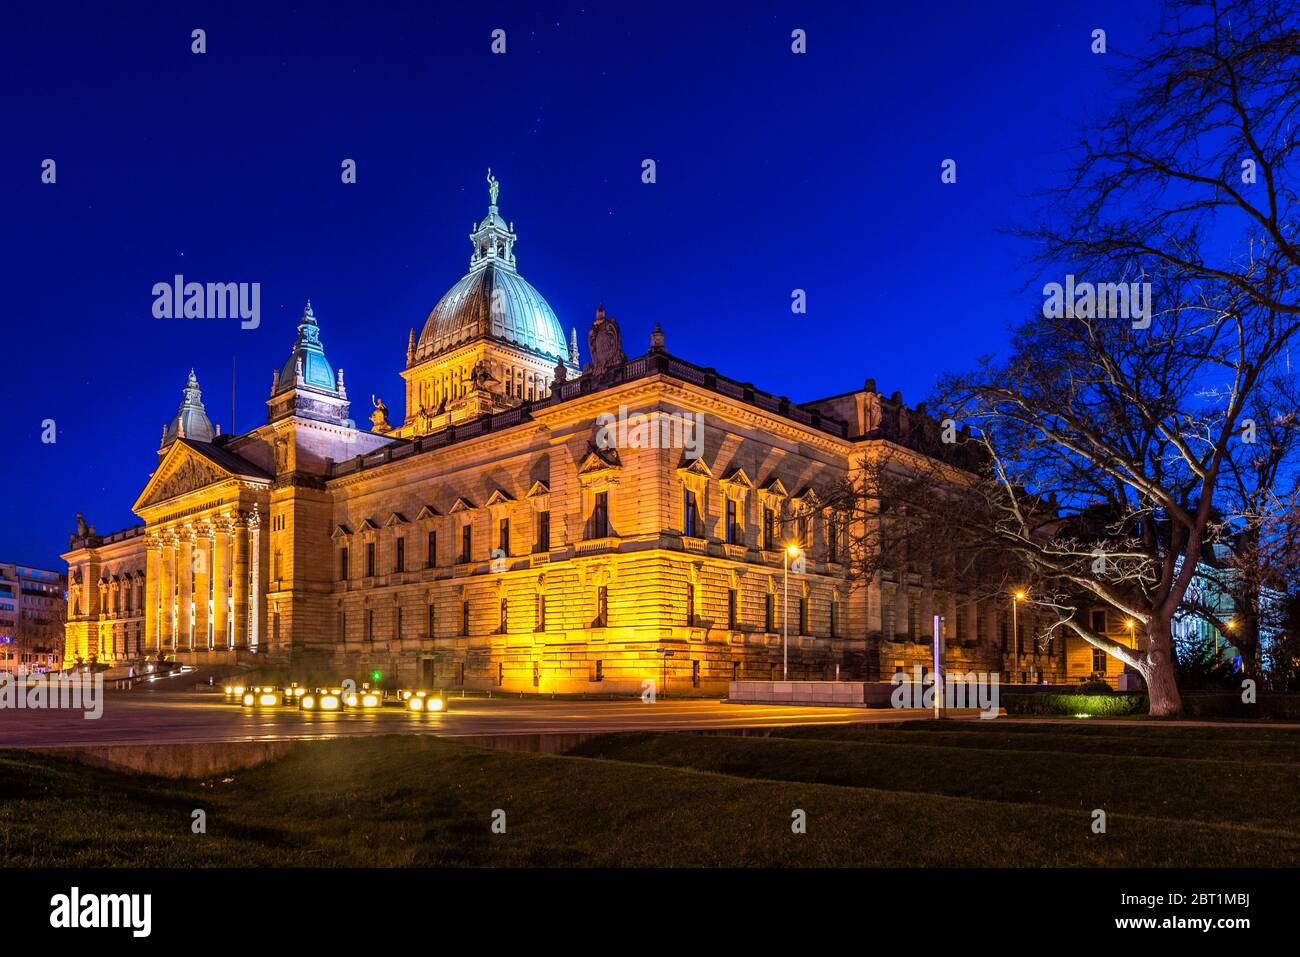 Bundesverwaltungsgericht di Lipsia, Sachsen, Deutschland, bei Nacht, beleuchtet Foto Stock